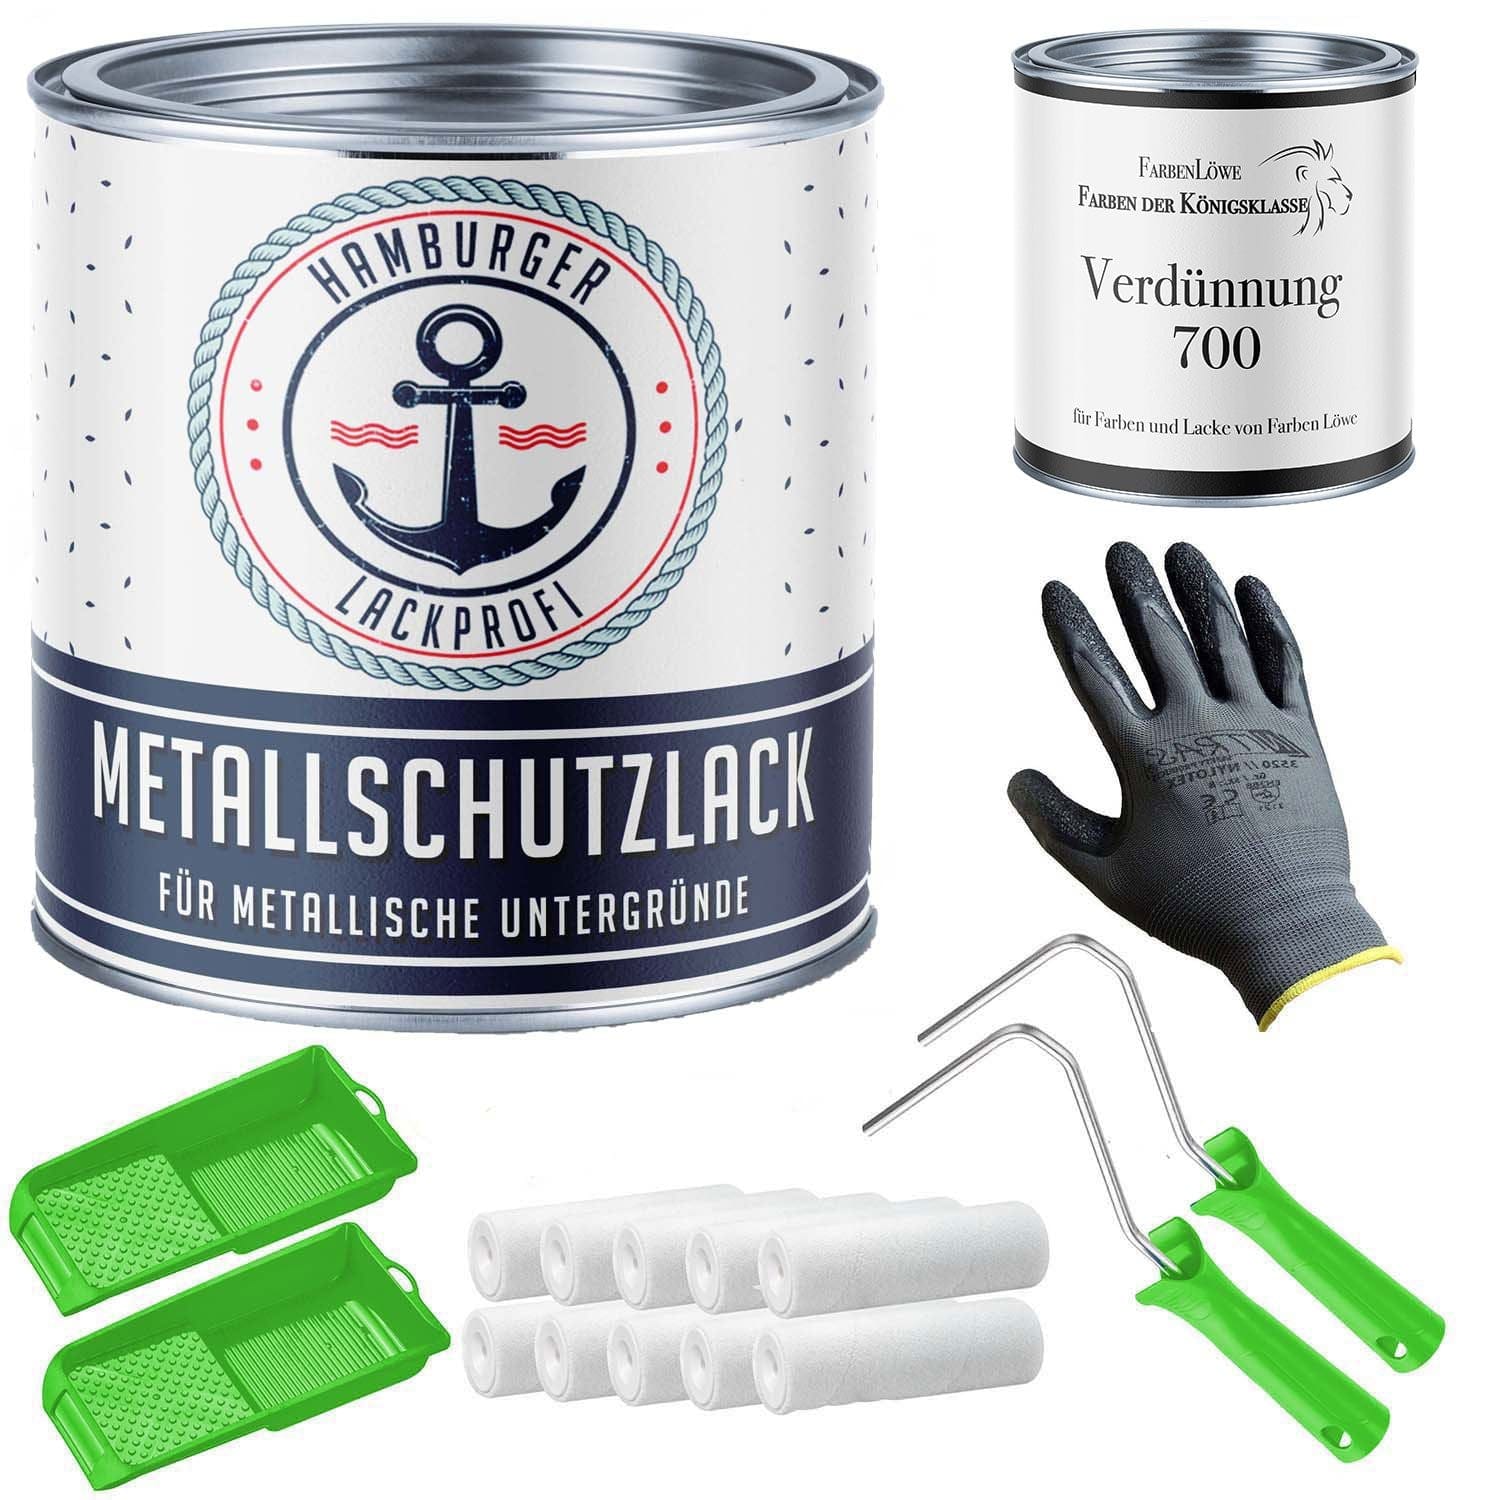 FARBENLÖWE Lacke & Beschichtungen Hamburger Lack-Profi Metallschutzlack in Graphitschwarz RAL 9011 mit Lackierset (X300) & Verdünnung (1 L) - 30% Sparangebot